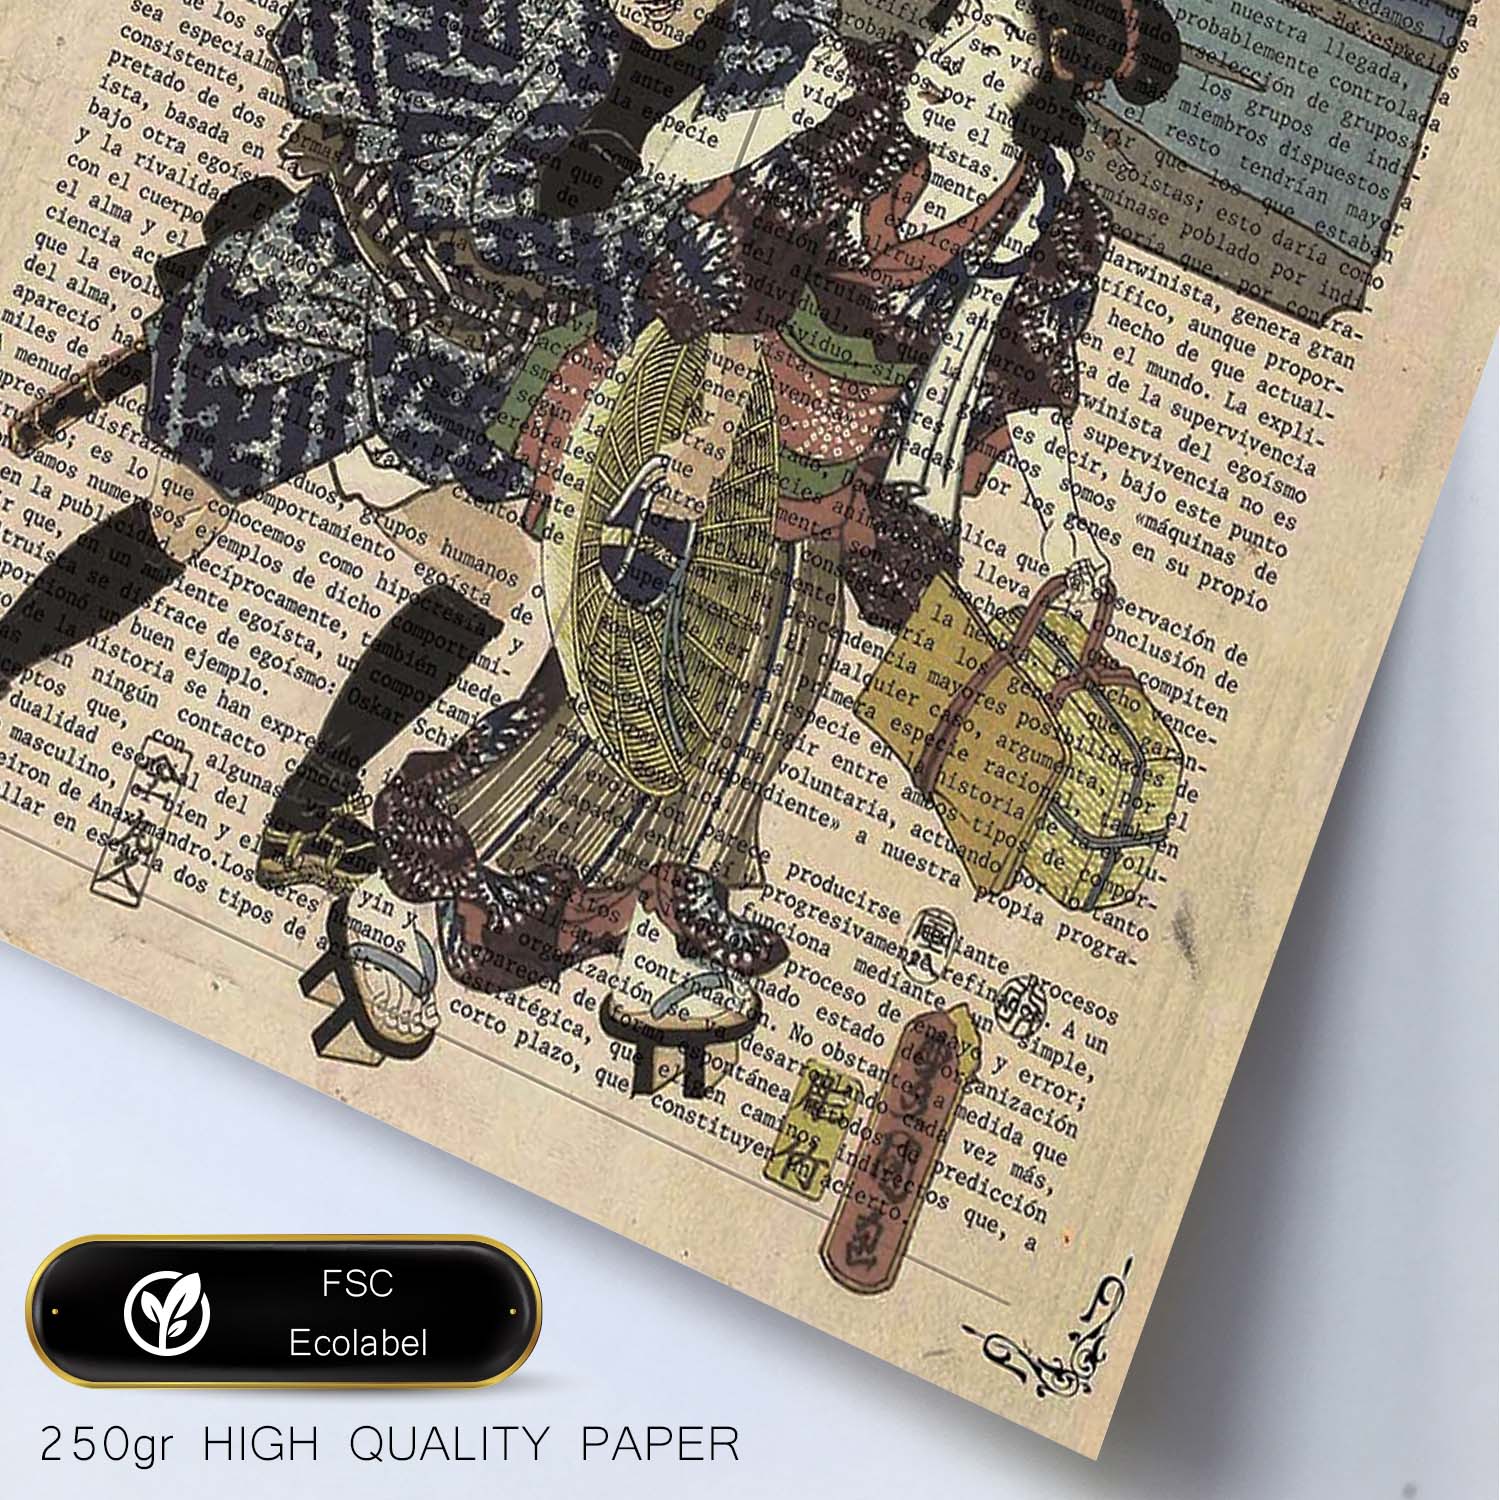 Poster de Japoneses en el lago. Láminas de geishas. Diseños japoneses con definiciones de la cultura japonesa.-Artwork-Nacnic-Nacnic Estudio SL